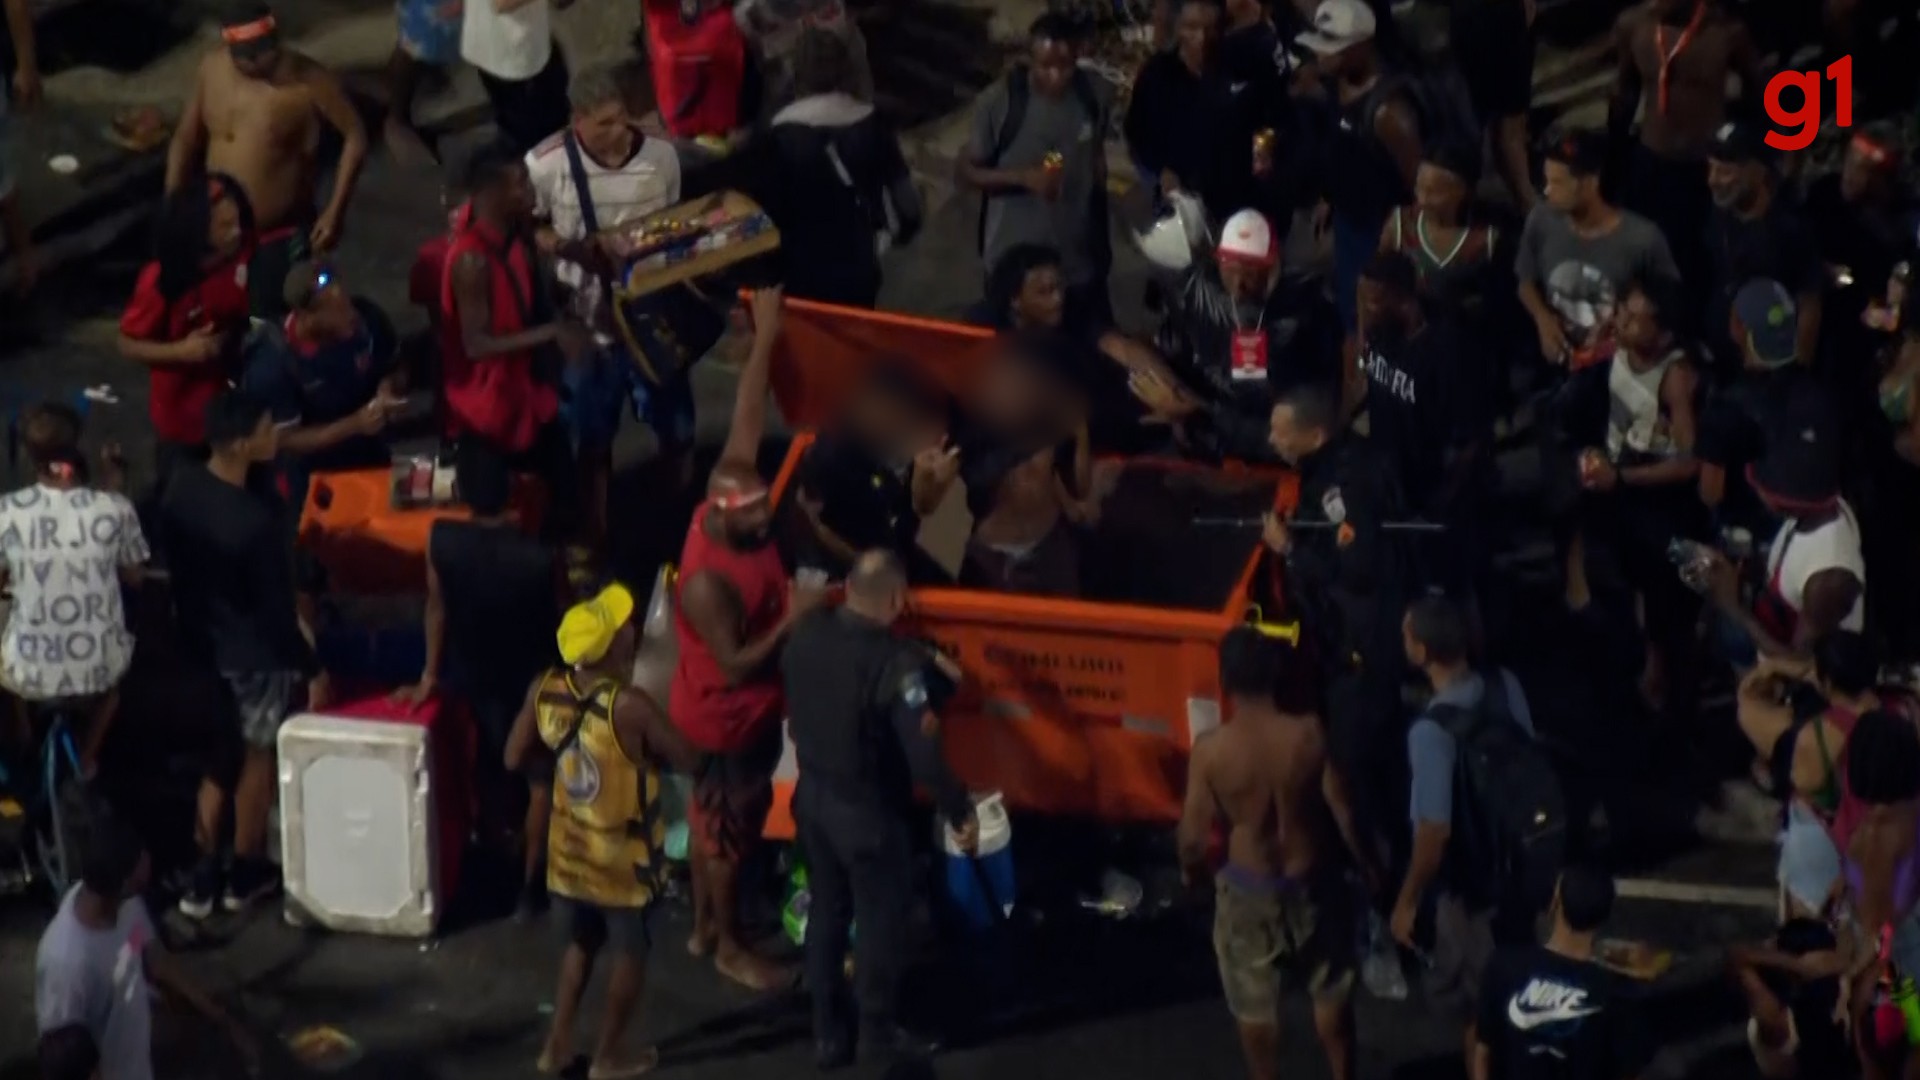 Vídeo: grupo agride e joga supostos ladrões em contêiner de lixo antes de show da Madonna